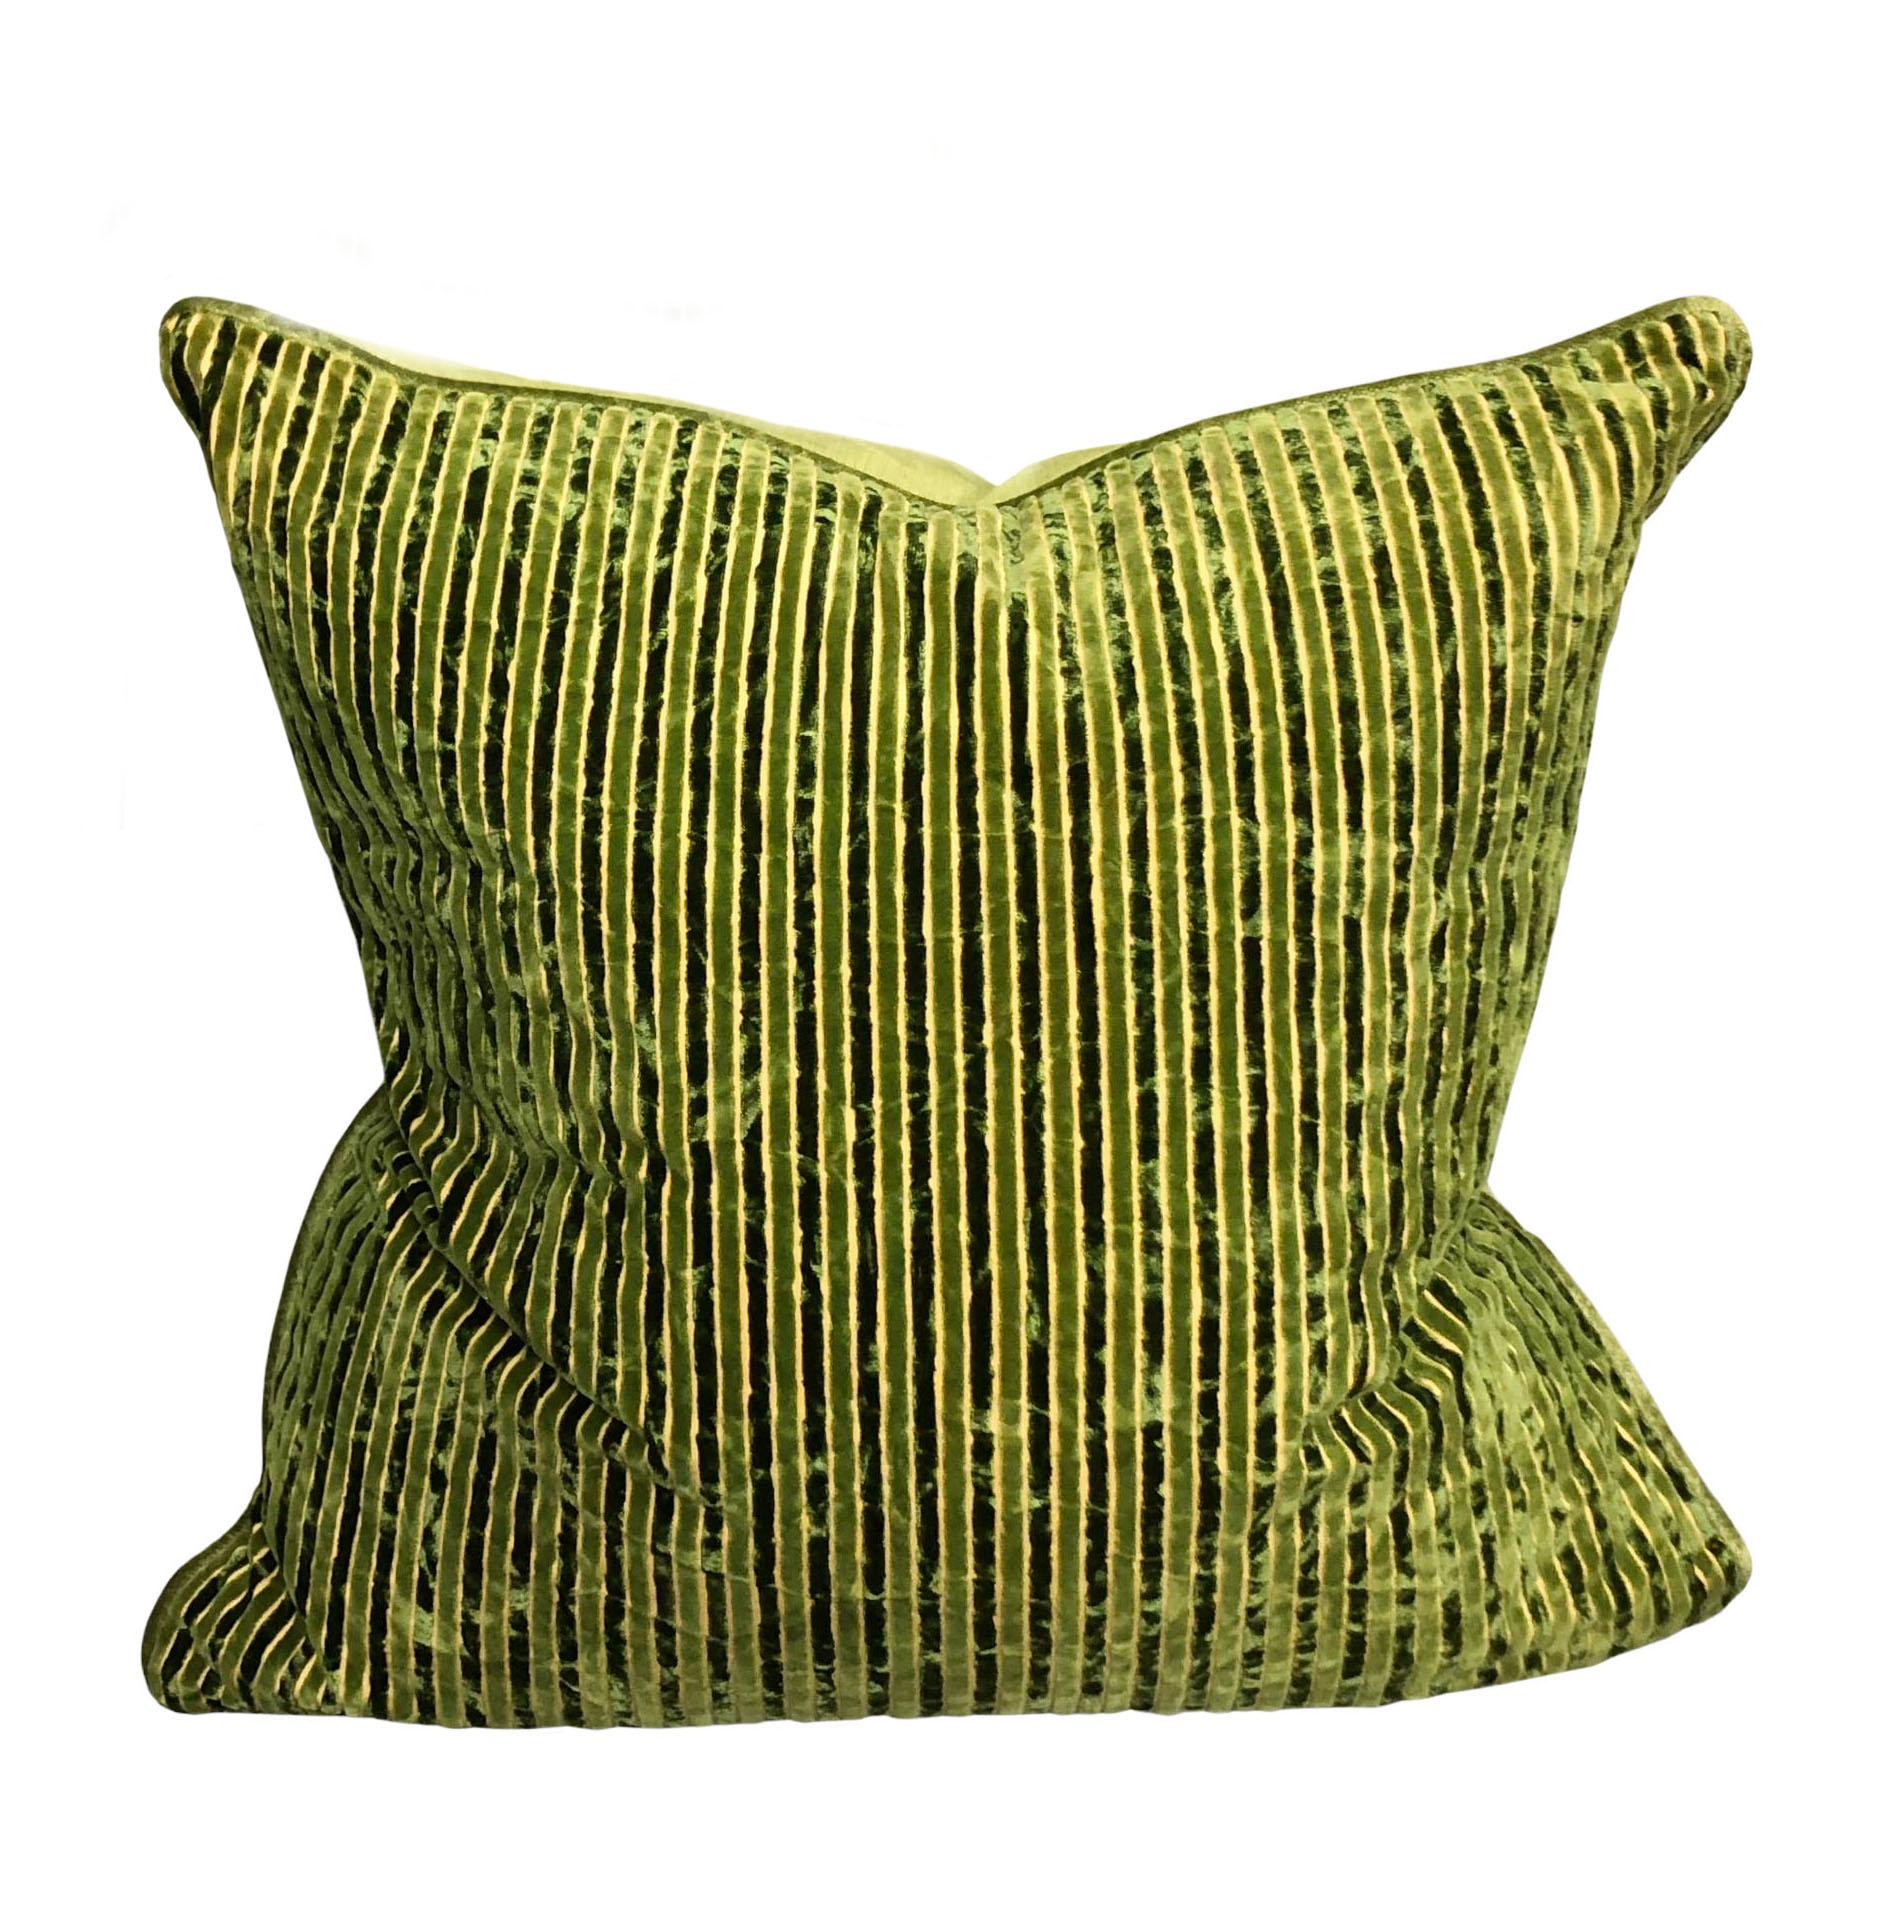 Une paire de coussins en velours de soie Salamandré avec des rayures vertes alternées sur le devant et un dos vert uni. Garnissage en plumes et en duvet. Les coussins ont été fabriqués avec du tissu vintage des années 1970.
